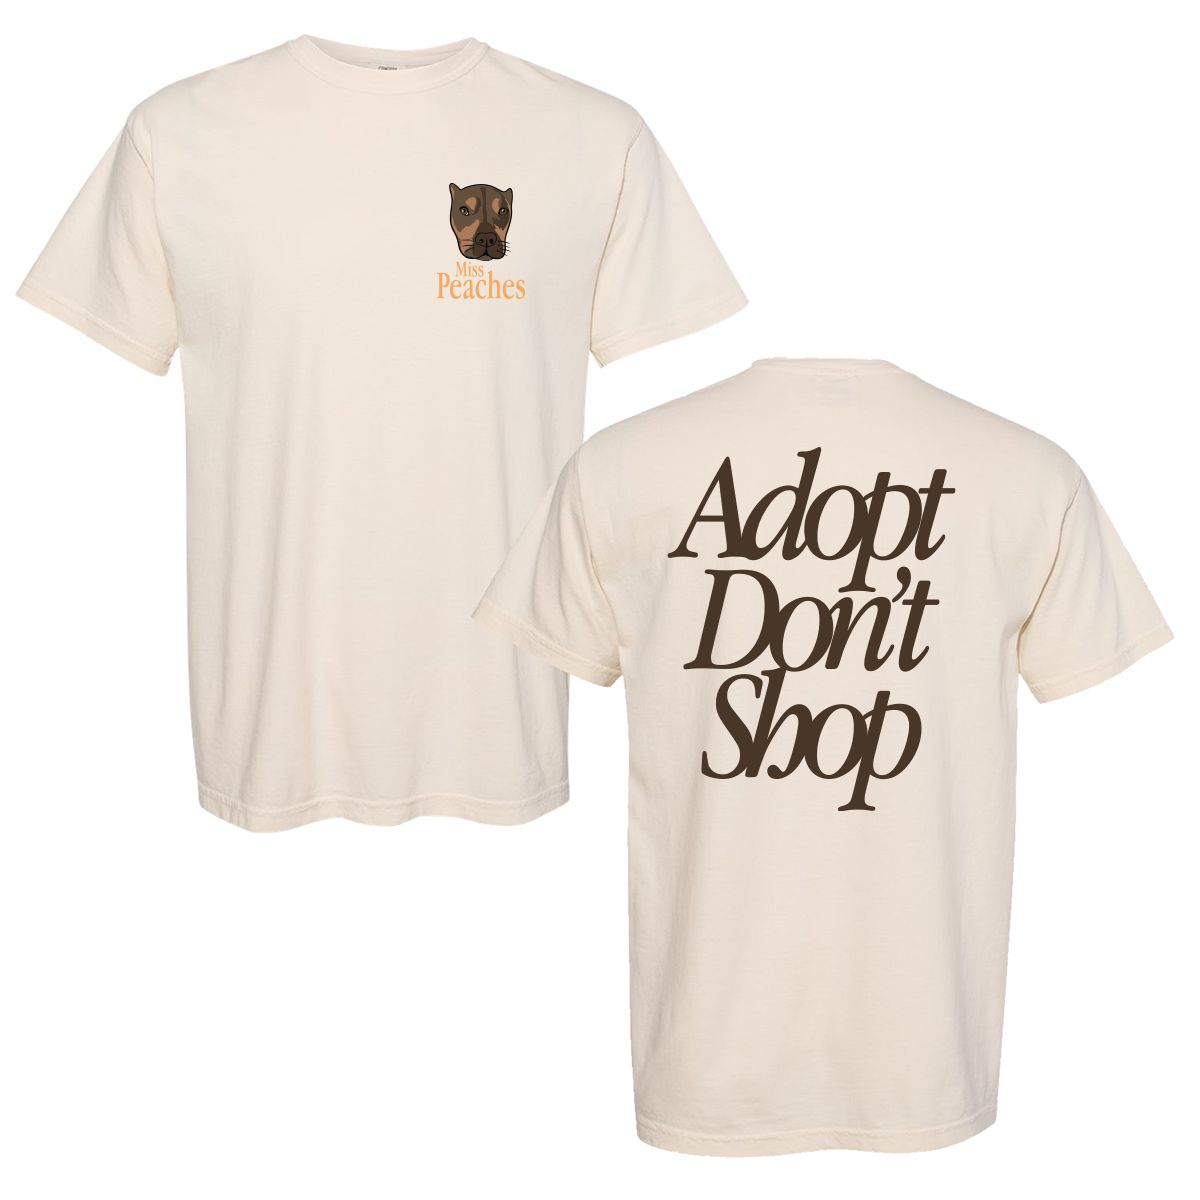 Adopt Don’t Shop Tee